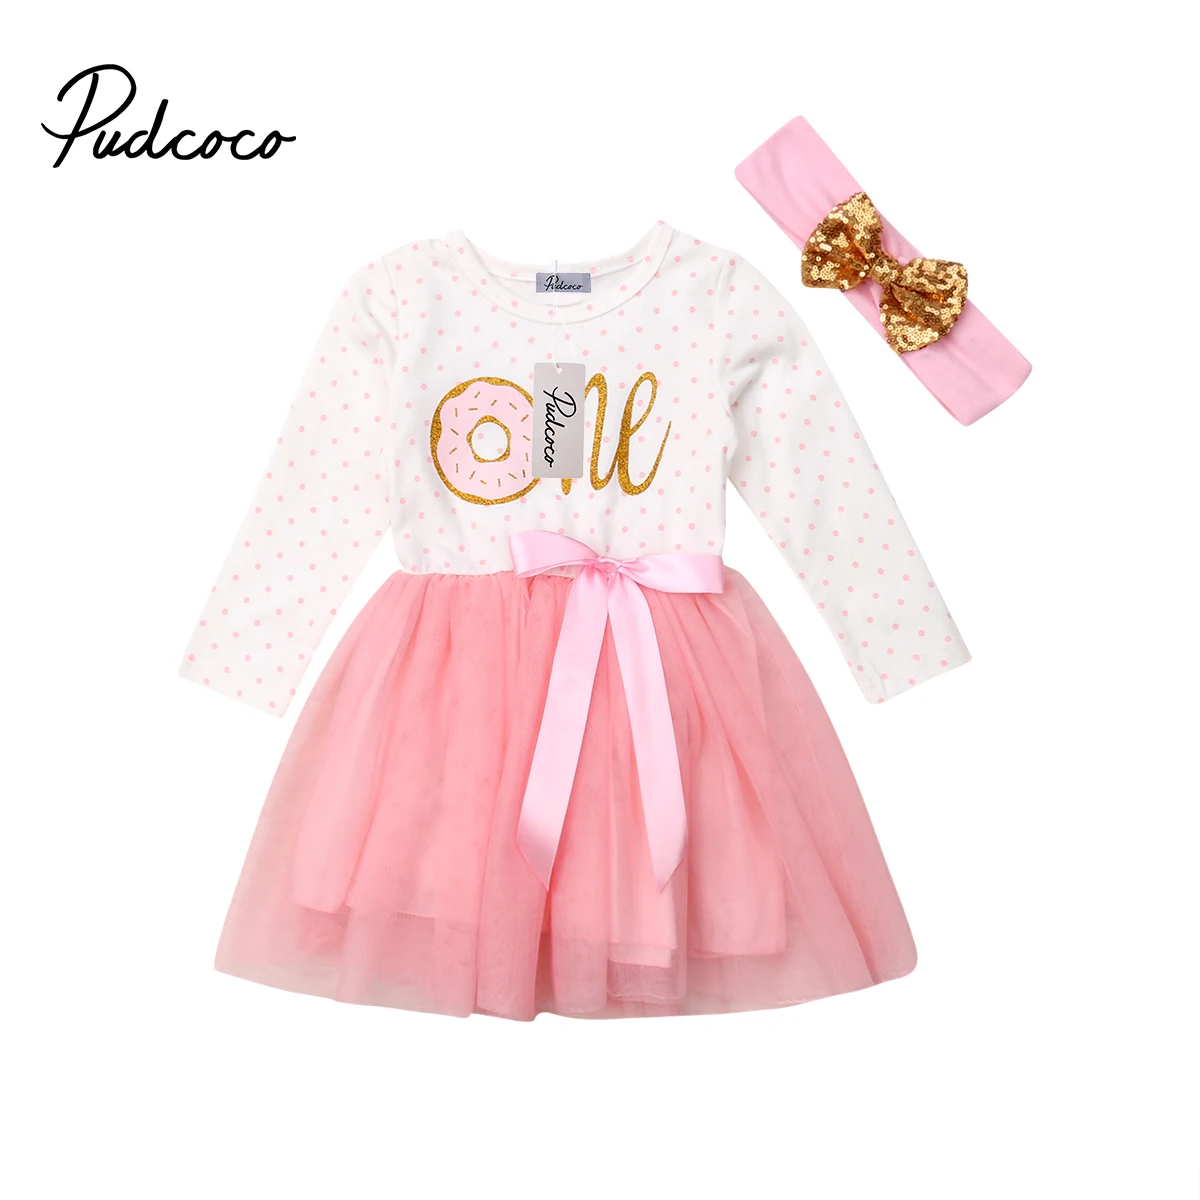 Pudcoco/фатиновое платье-пачка для маленьких девочек на 1-й, 2-й, 3-й день рождения повязка на голову, комплект одежды, наряды на день рождения vestido de bebes